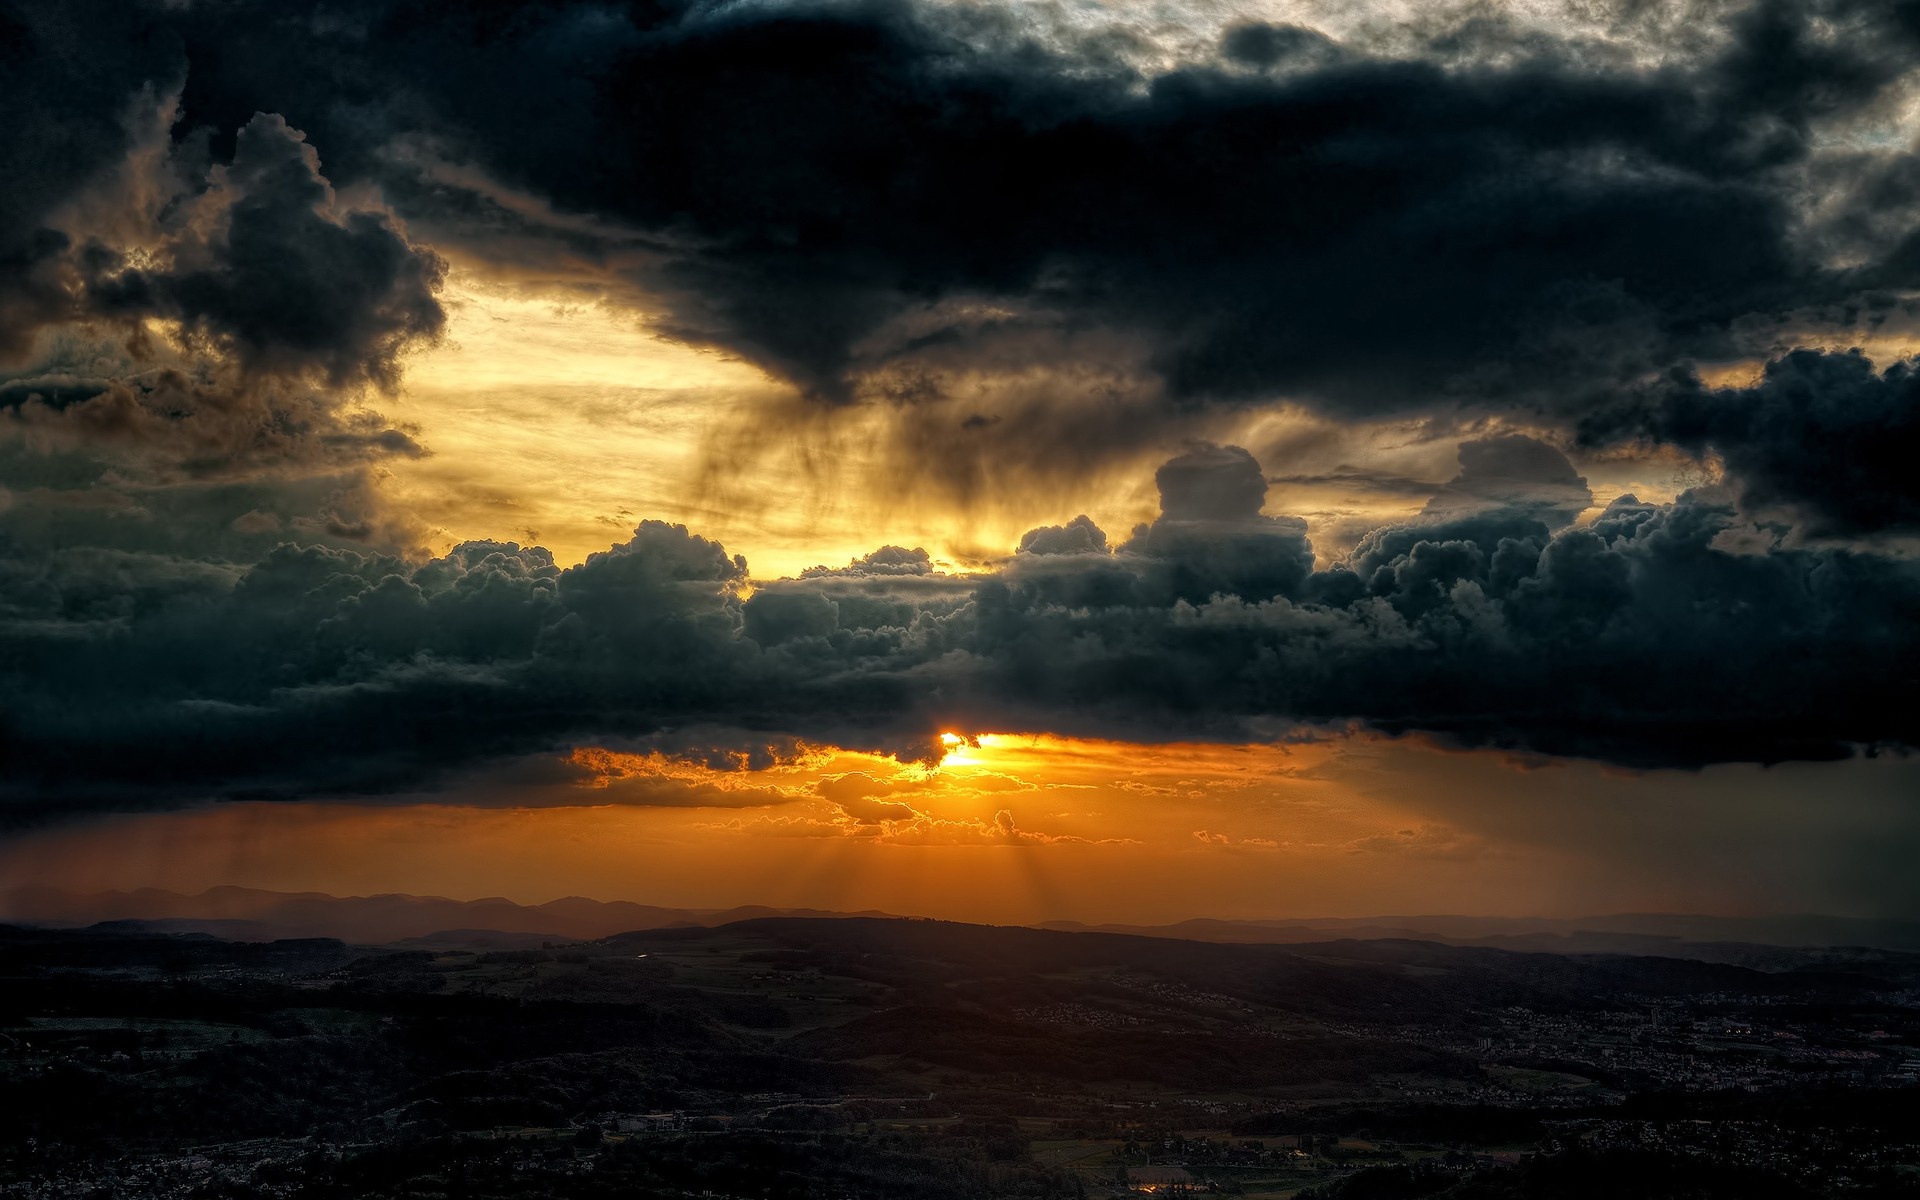 Gray Cloudy Sky: Dawn, Daybreak, Dark clouds blocking sunlight, Cumulonimbus. 1920x1200 HD Wallpaper.